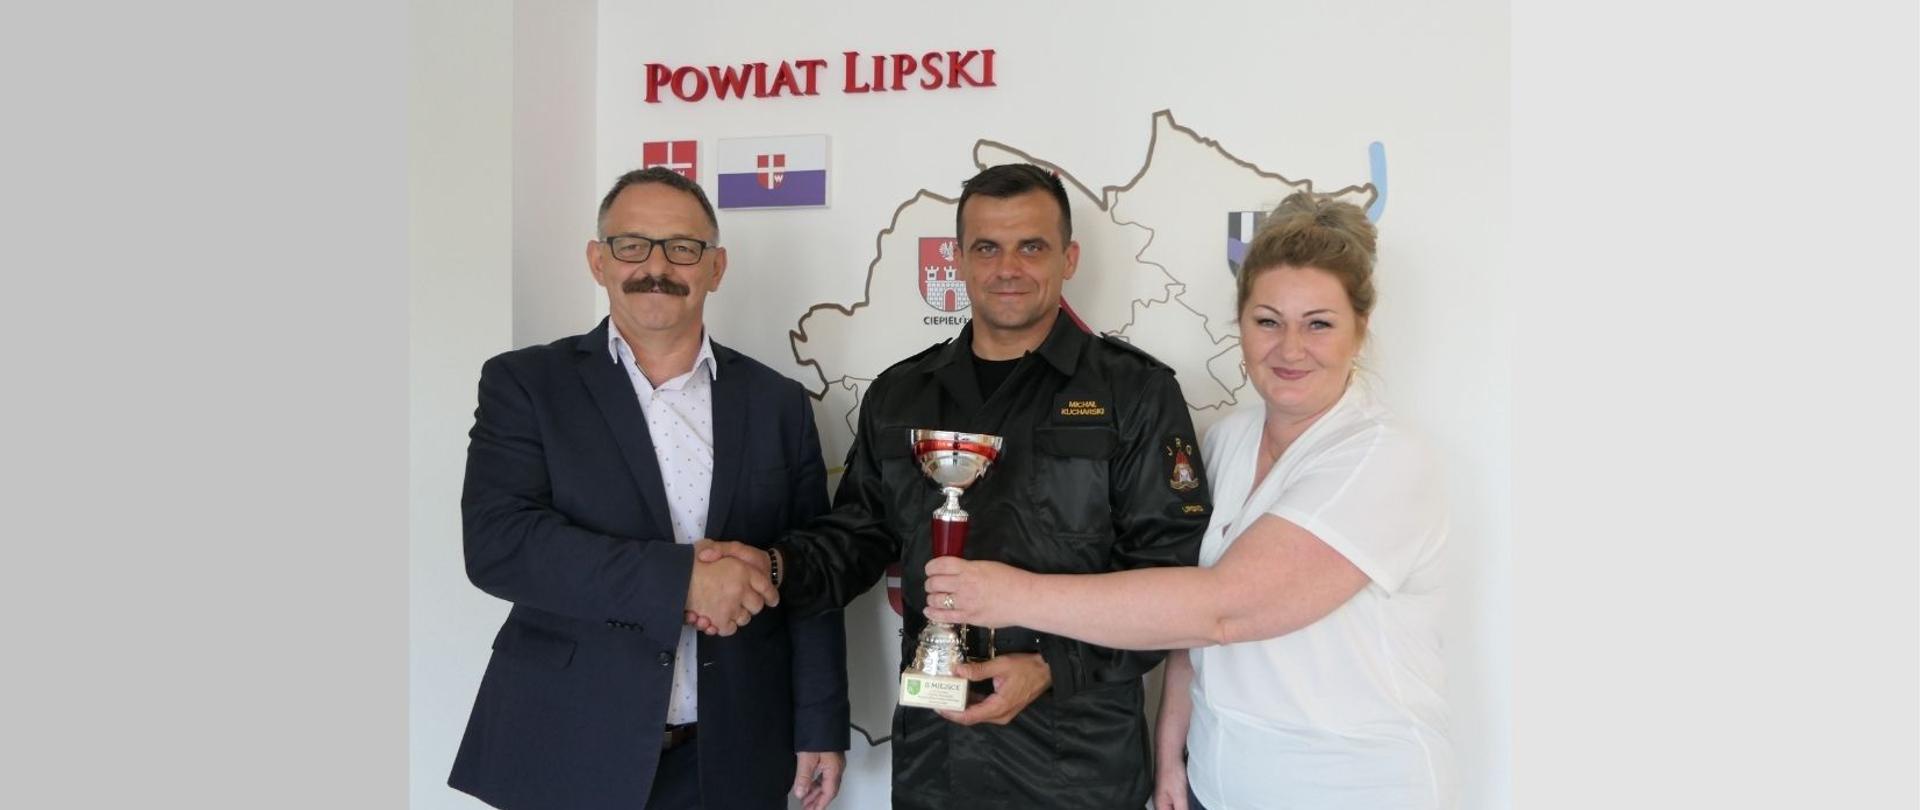 Starosta Lipski - Sławomir Śmieciuch oraz Wicestarosta Powiatu - Maria Węgrzecka gratulują reprezentantowi drużyny sukcesu.